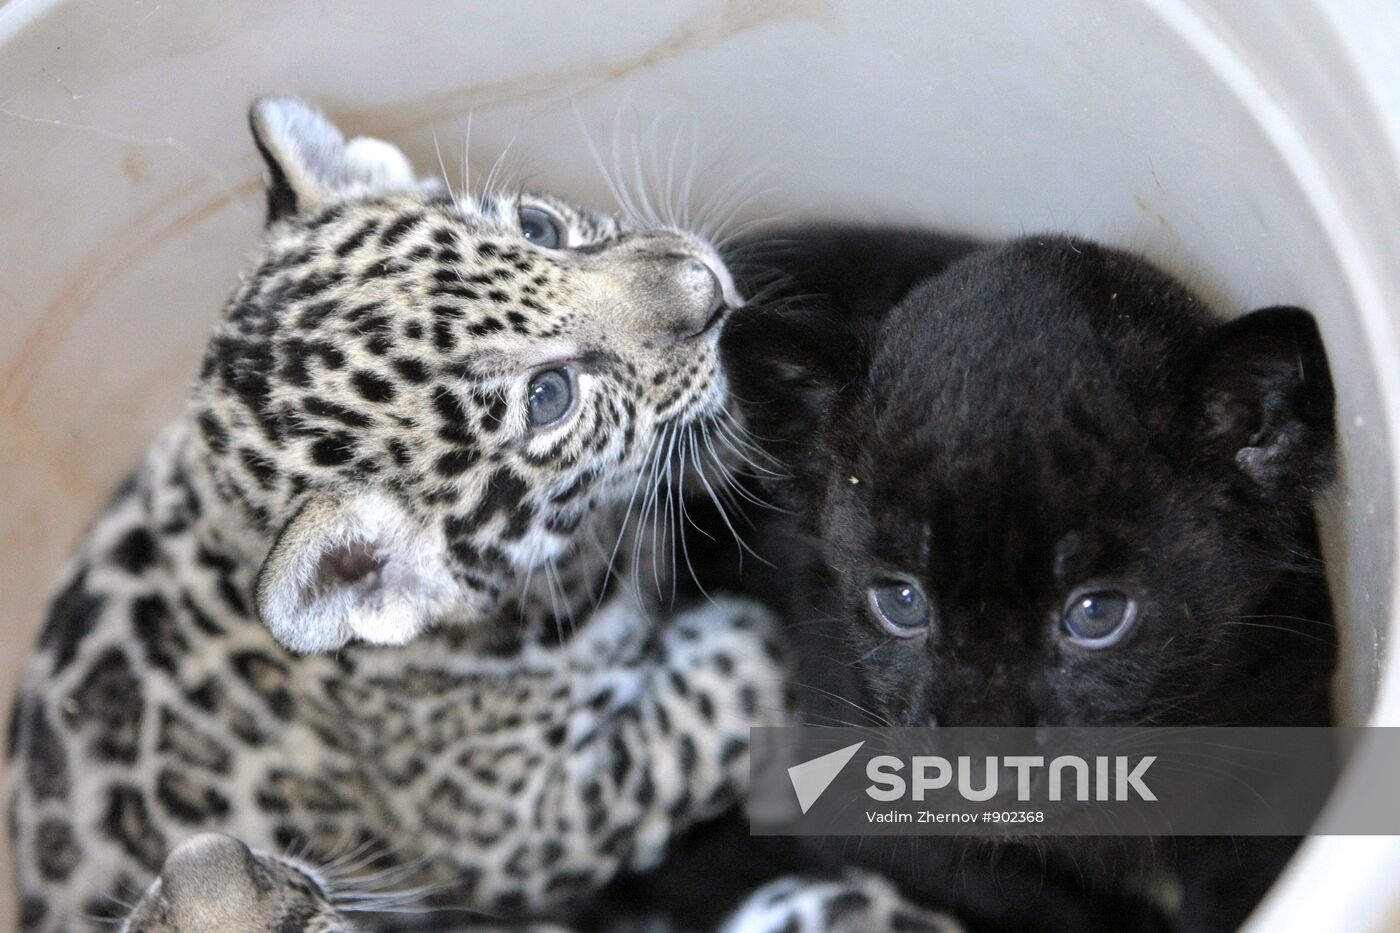 Newborn jaguar cubs at St. Petersburg zoo